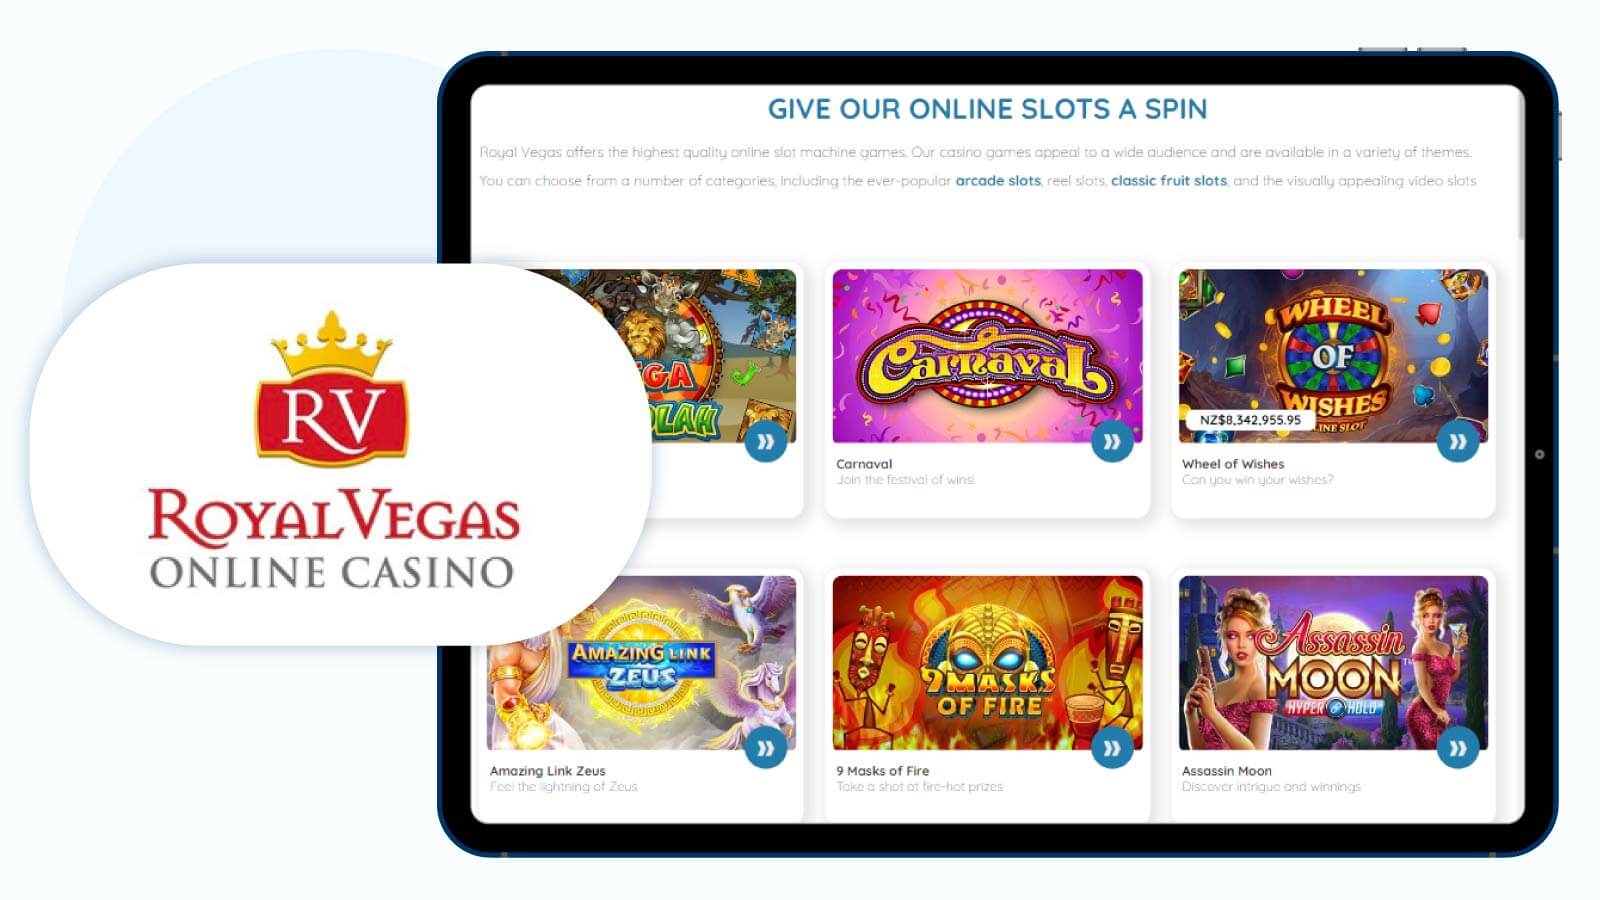 Royal Vegas Casino Deposit $5 get 100 Mega Moolah spins